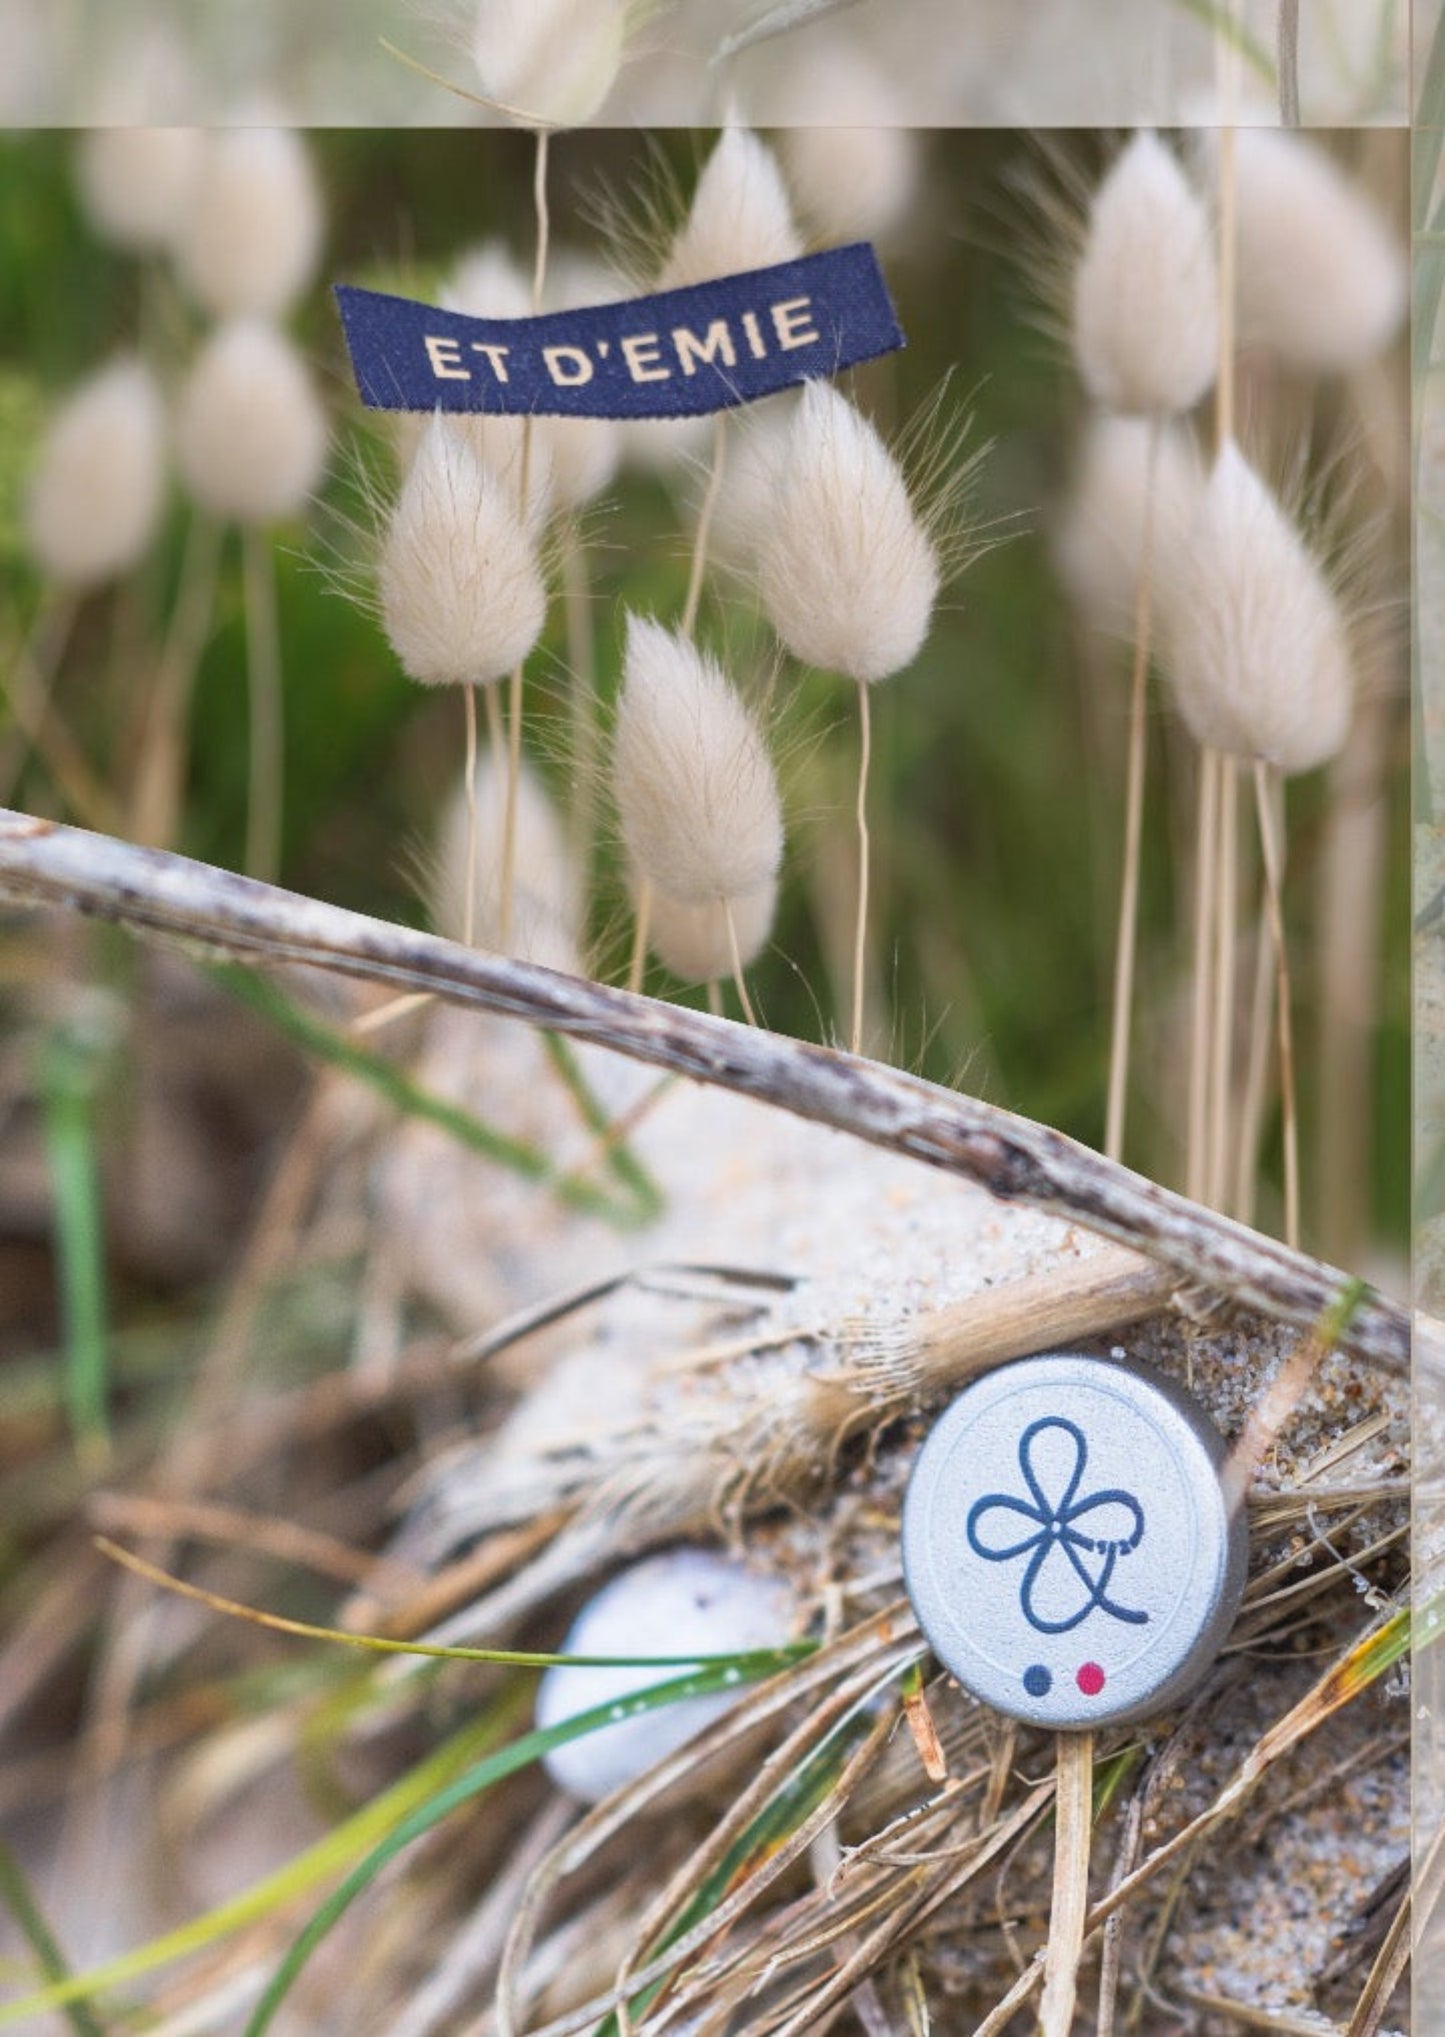 ET D'EMIE marque de vêtements ecoresponsable créée et fabriquée en France pour la famille pour grandir et faire grandir. Designed in Bretagne made in France.